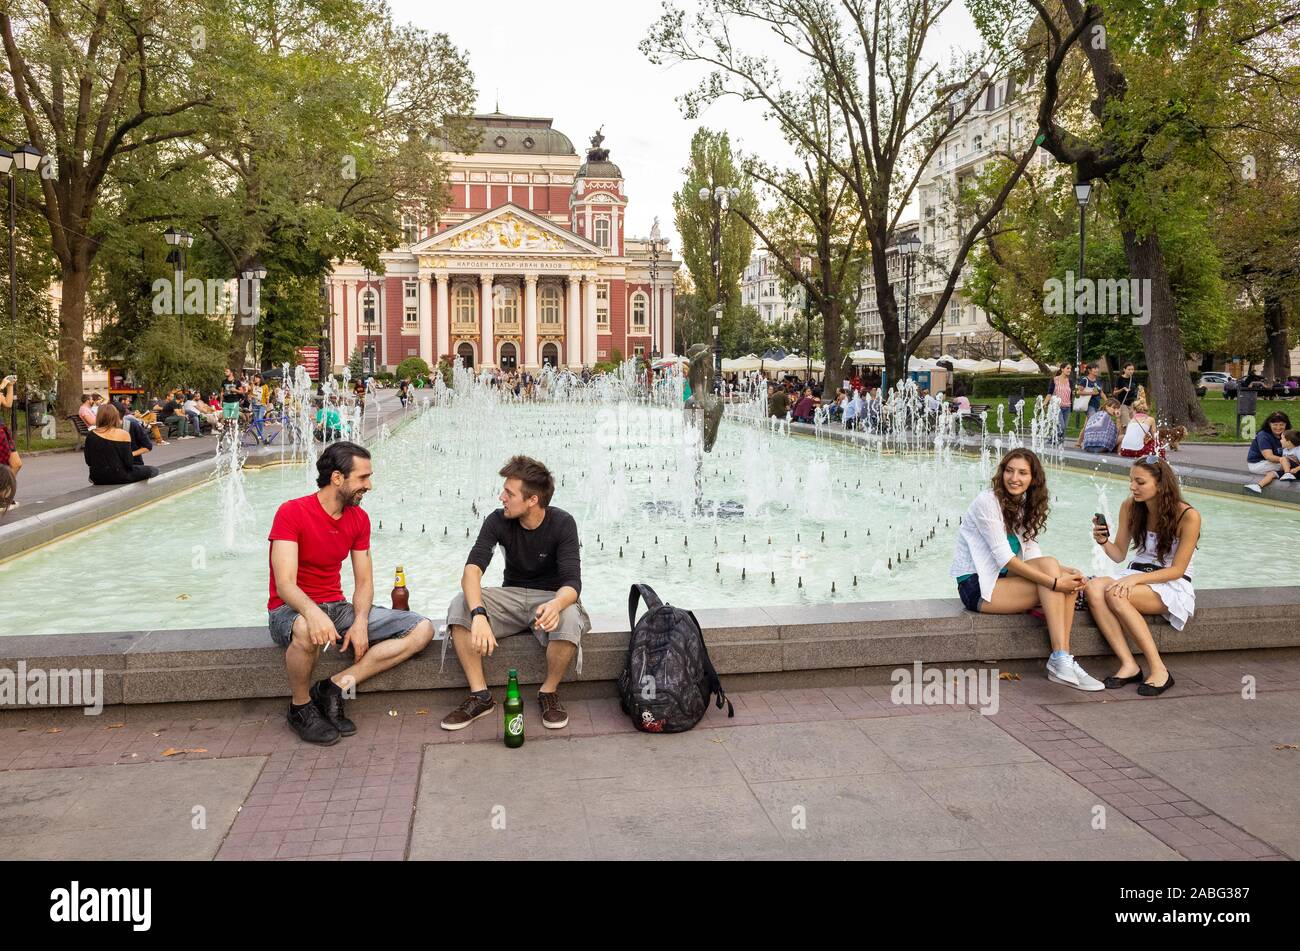 Jóvenes que se encuentran en el parque City Garden, frente al Teatro Nacional Ivan Vazov, Sofía, Bulgaria Foto de stock